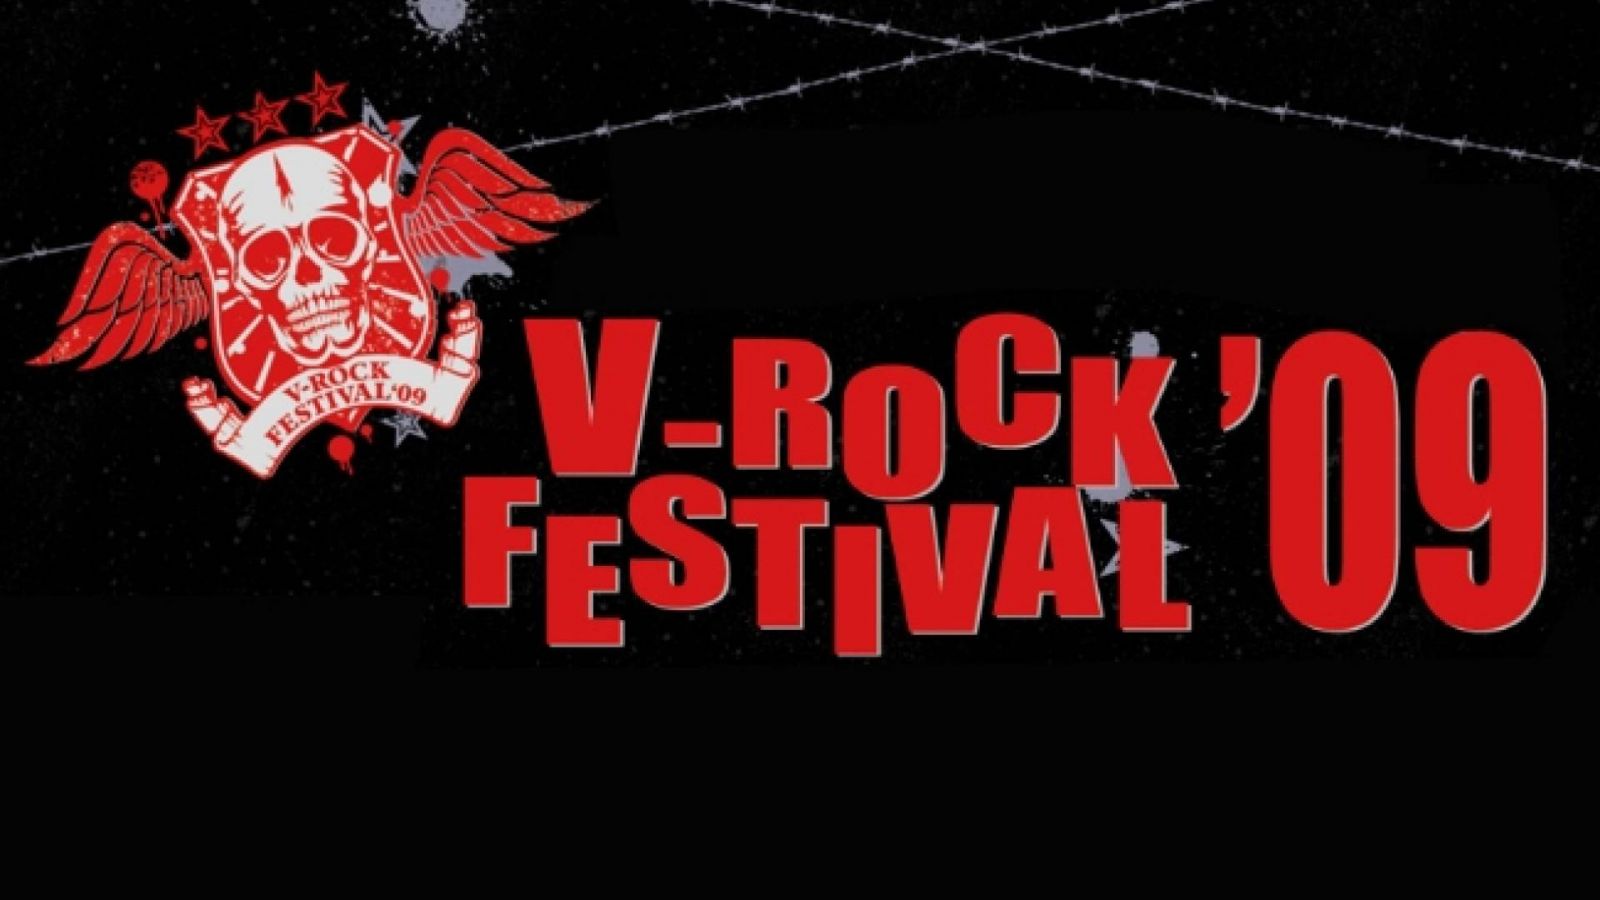 Le V-ROCK FESTIVAL09 comme si vous y êtiez, ou presque ! -édité- © Backstage Project